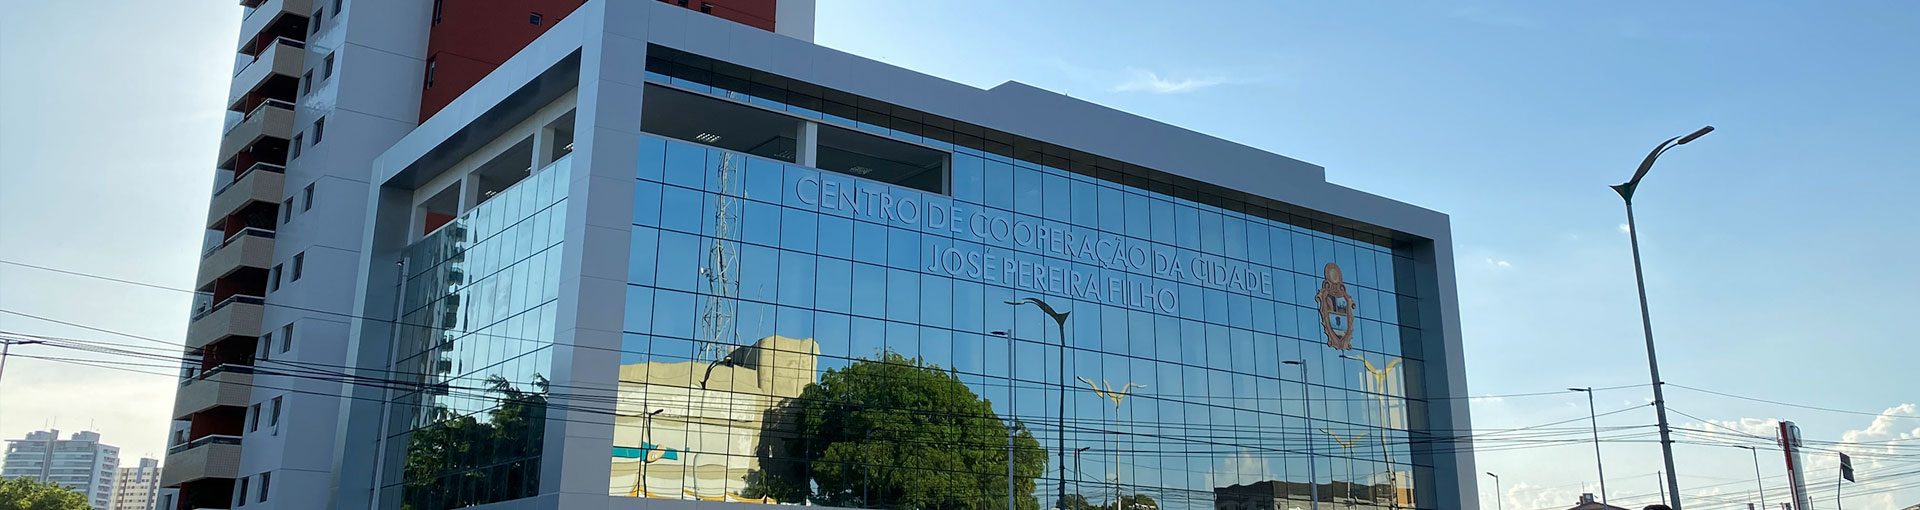 CCC - Centro de Cooperação da Cidade - José Pereira Filho